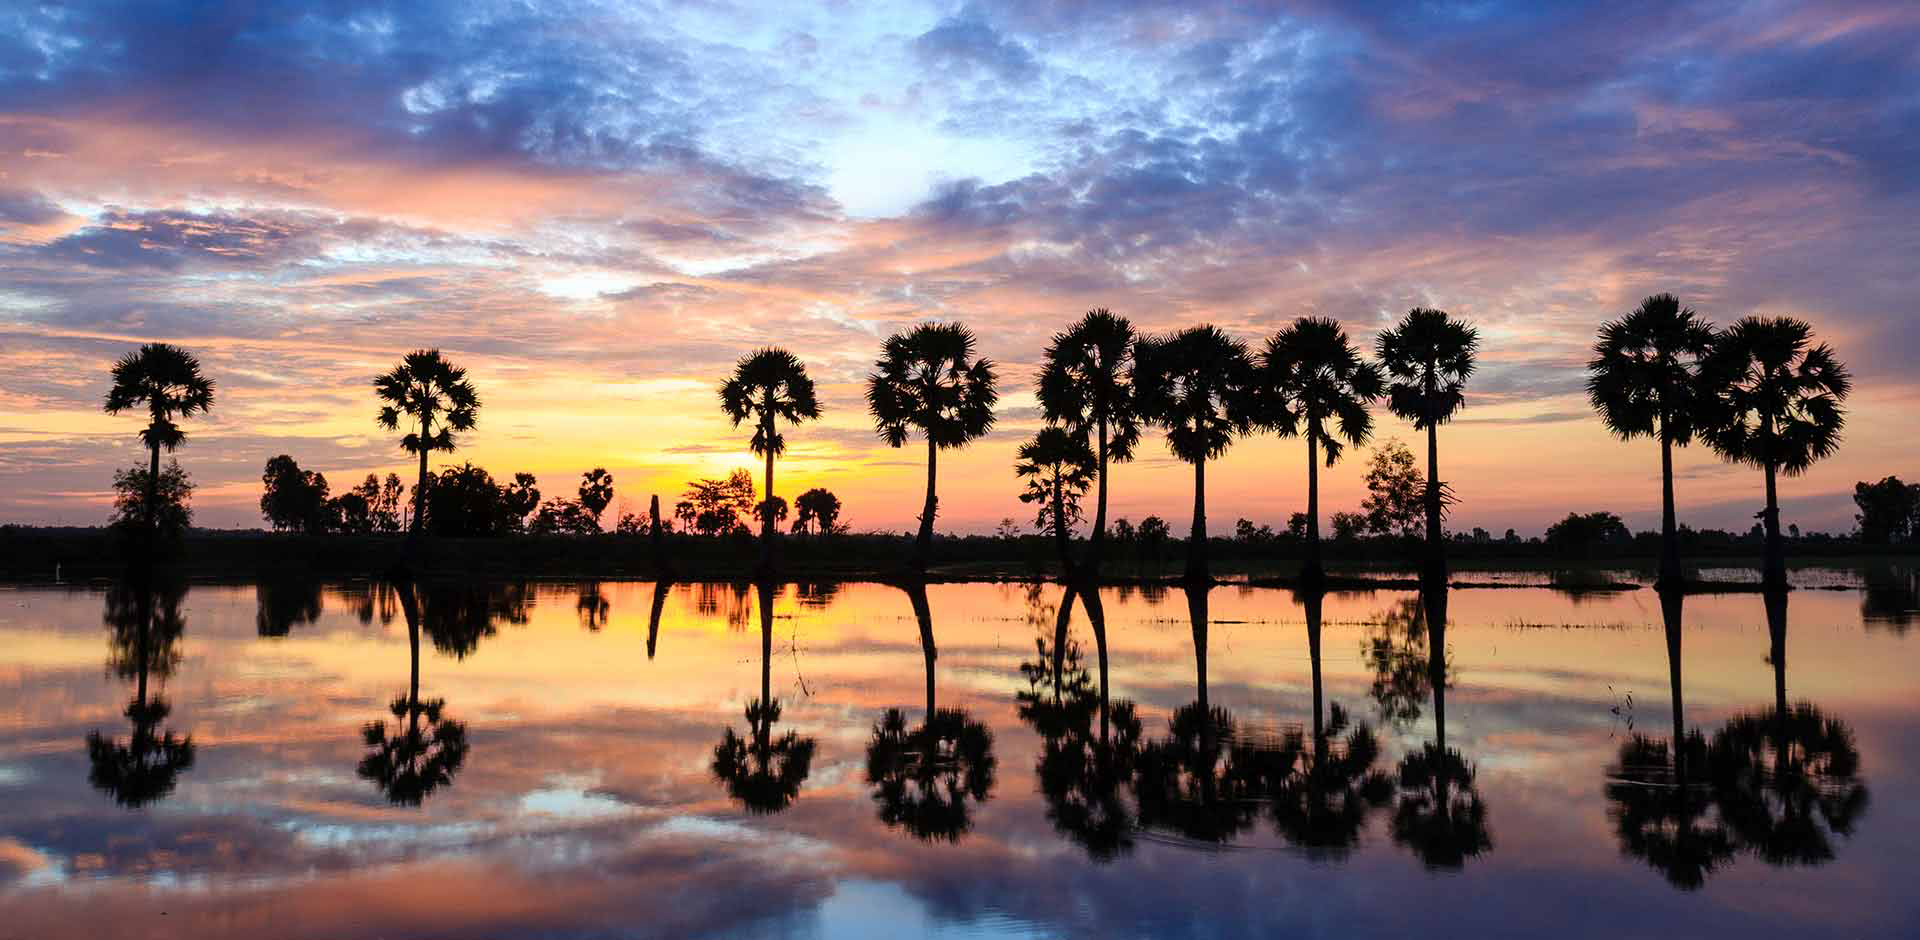 Bạn muốn tìm kiếm một địa điểm để ngắm Hoàng Hôn đẹp nhất Việt Nam? Hãy tham khảo ngay top 5 địa điểm không thể bỏ qua như Tràng An, Phú Quốc, Hội An, Ninh Bình và Vũng Tàu. Tất cả đều là những địa điểm nổi tiếng với vẻ đẹp hoang sơ của thiên nhiên Việt Nam.